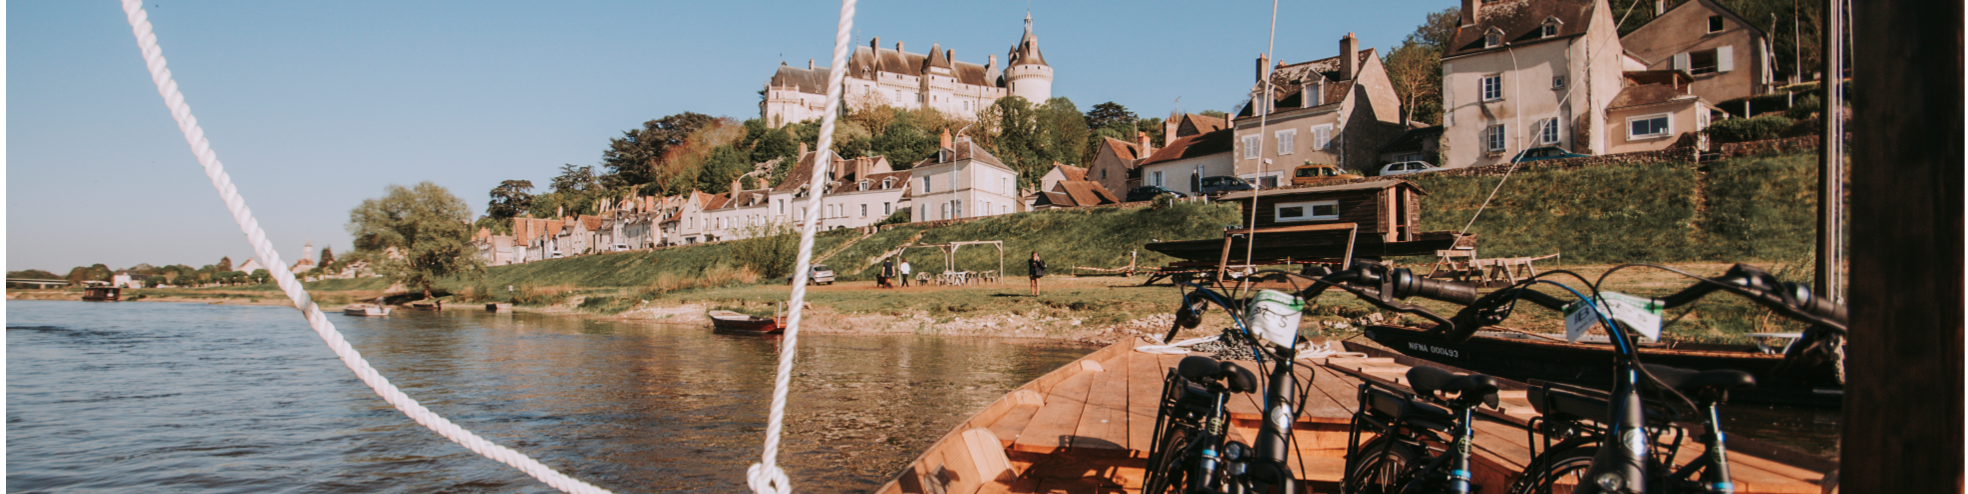 Balade royale à Amboise en vélo électrique & bateau